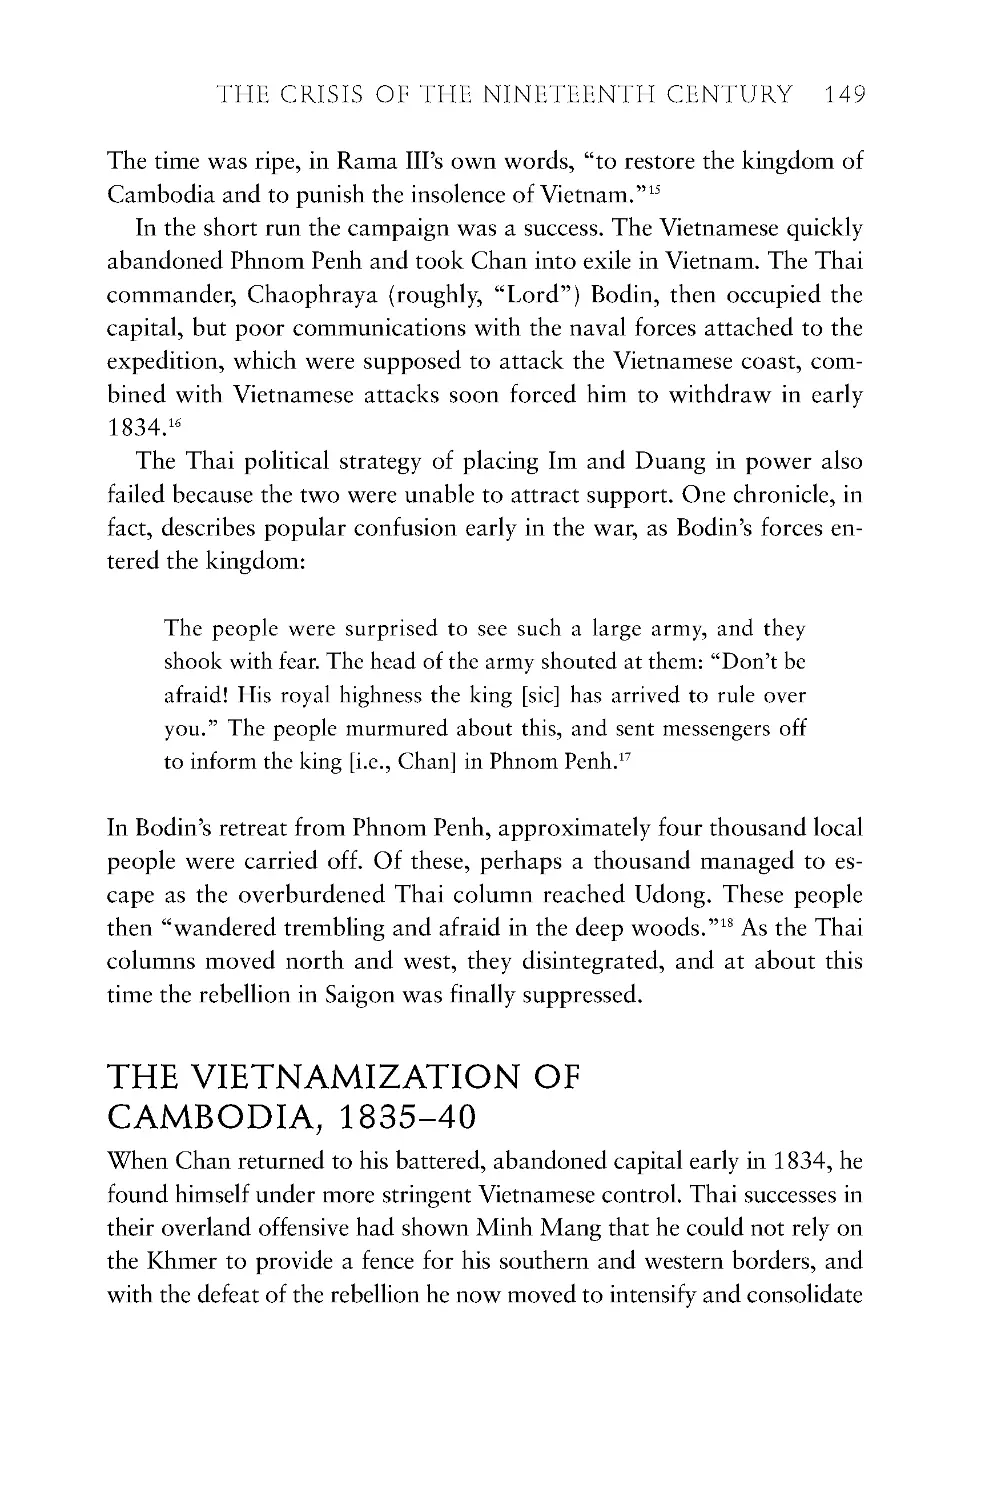 The Vietnamization of Cambodia, 1835-40